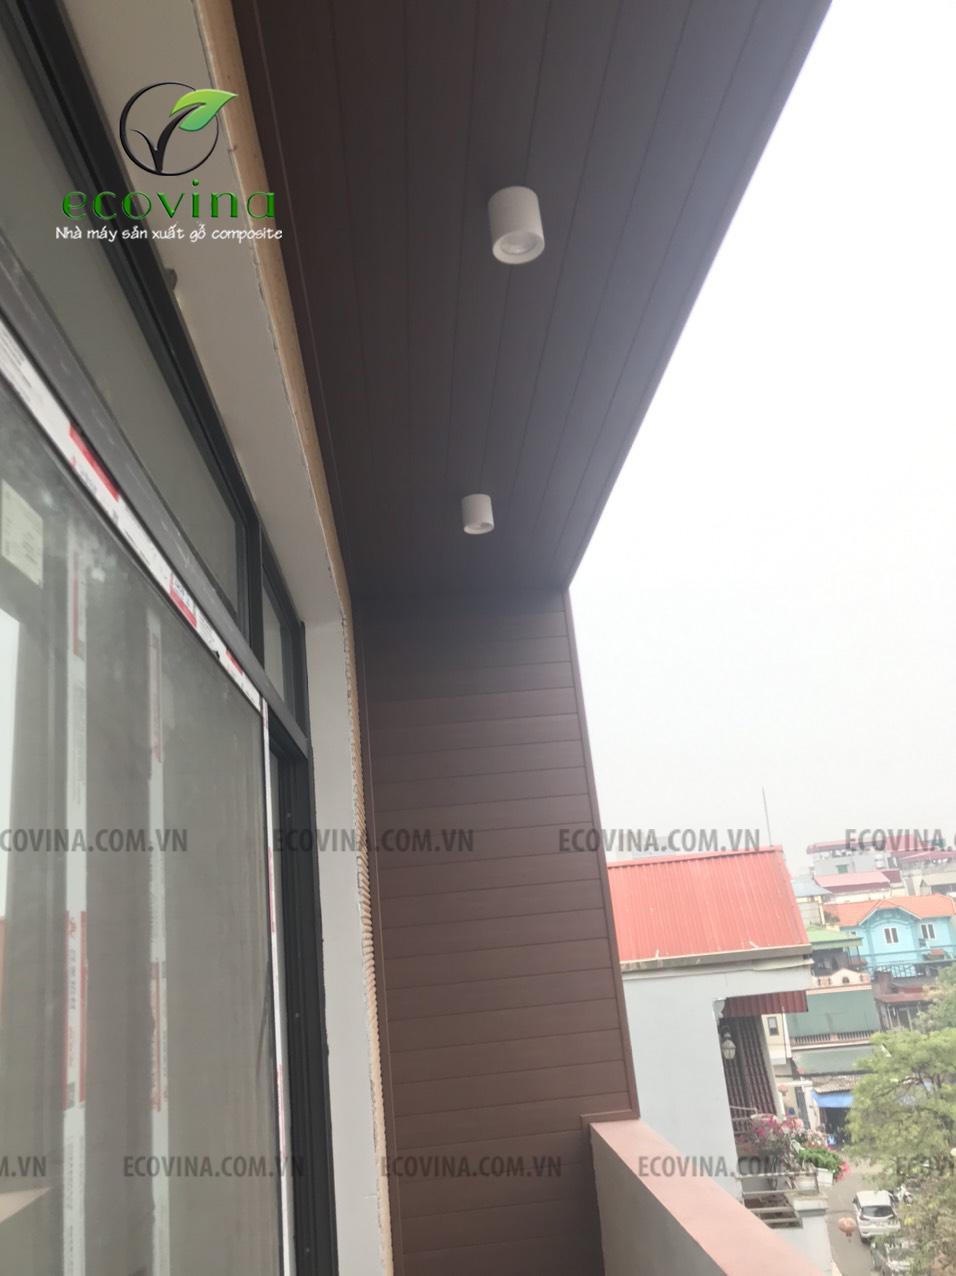 Thi công tấm ốp tường gỗ nhựa composite tại Long Biên - Hà Nội